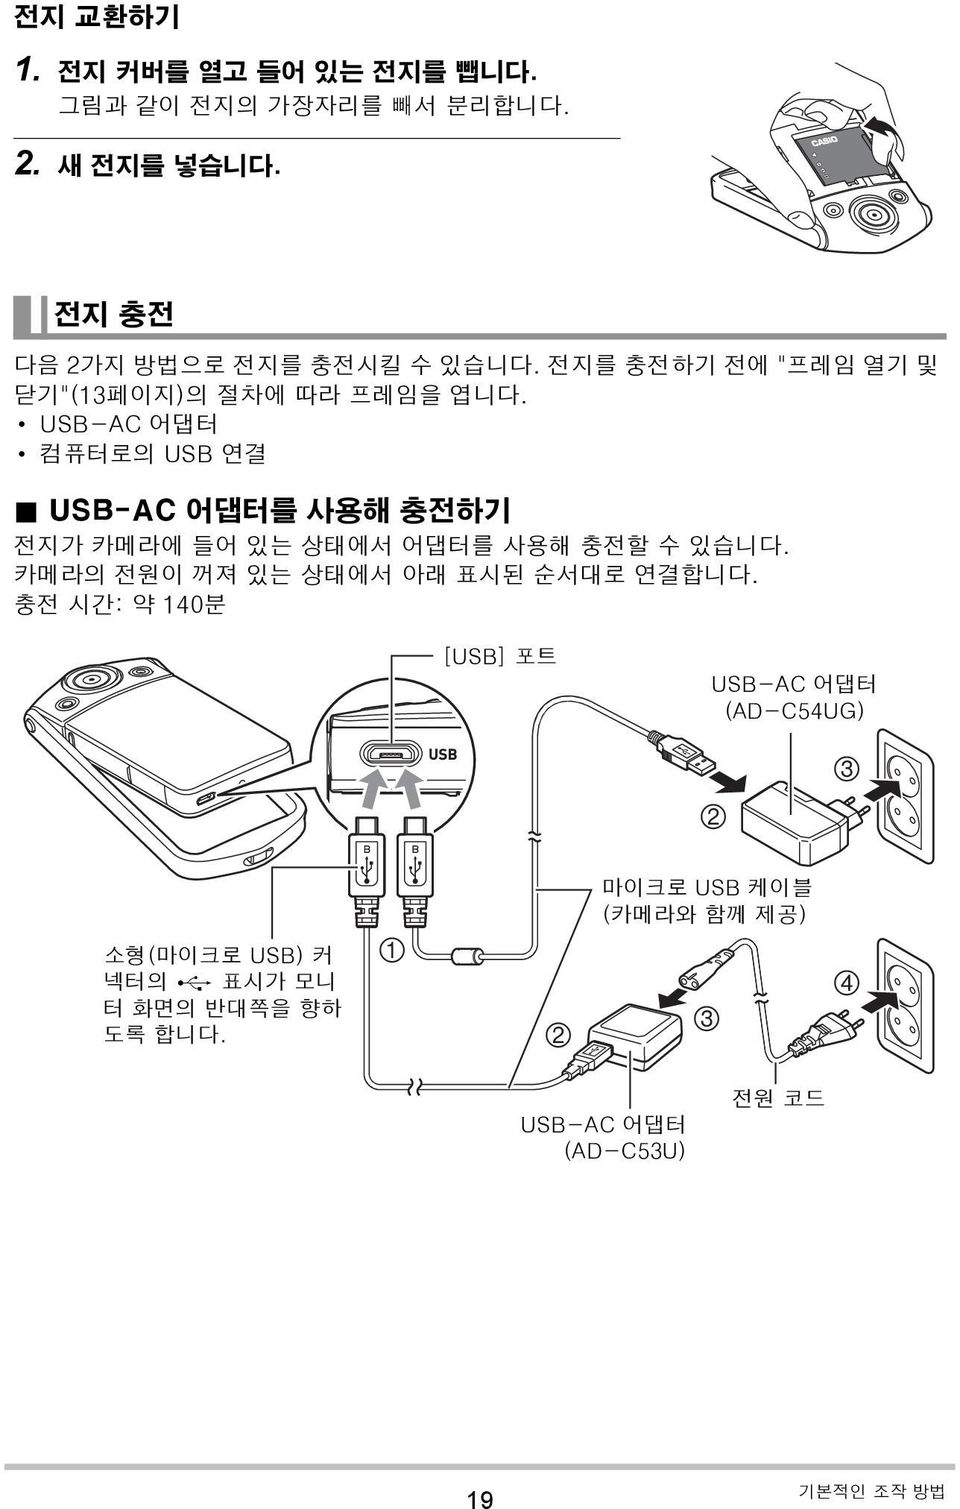 USB-AC 어댑터를 사용해 충전하기 전지가 카메라에 들어 있는 상태에서 어댑터를 사용해 충전할 수 있습니다. 카메라의 전원이 꺼져 있는 상태에서 아래 표시된 순서대로 연결합니다.